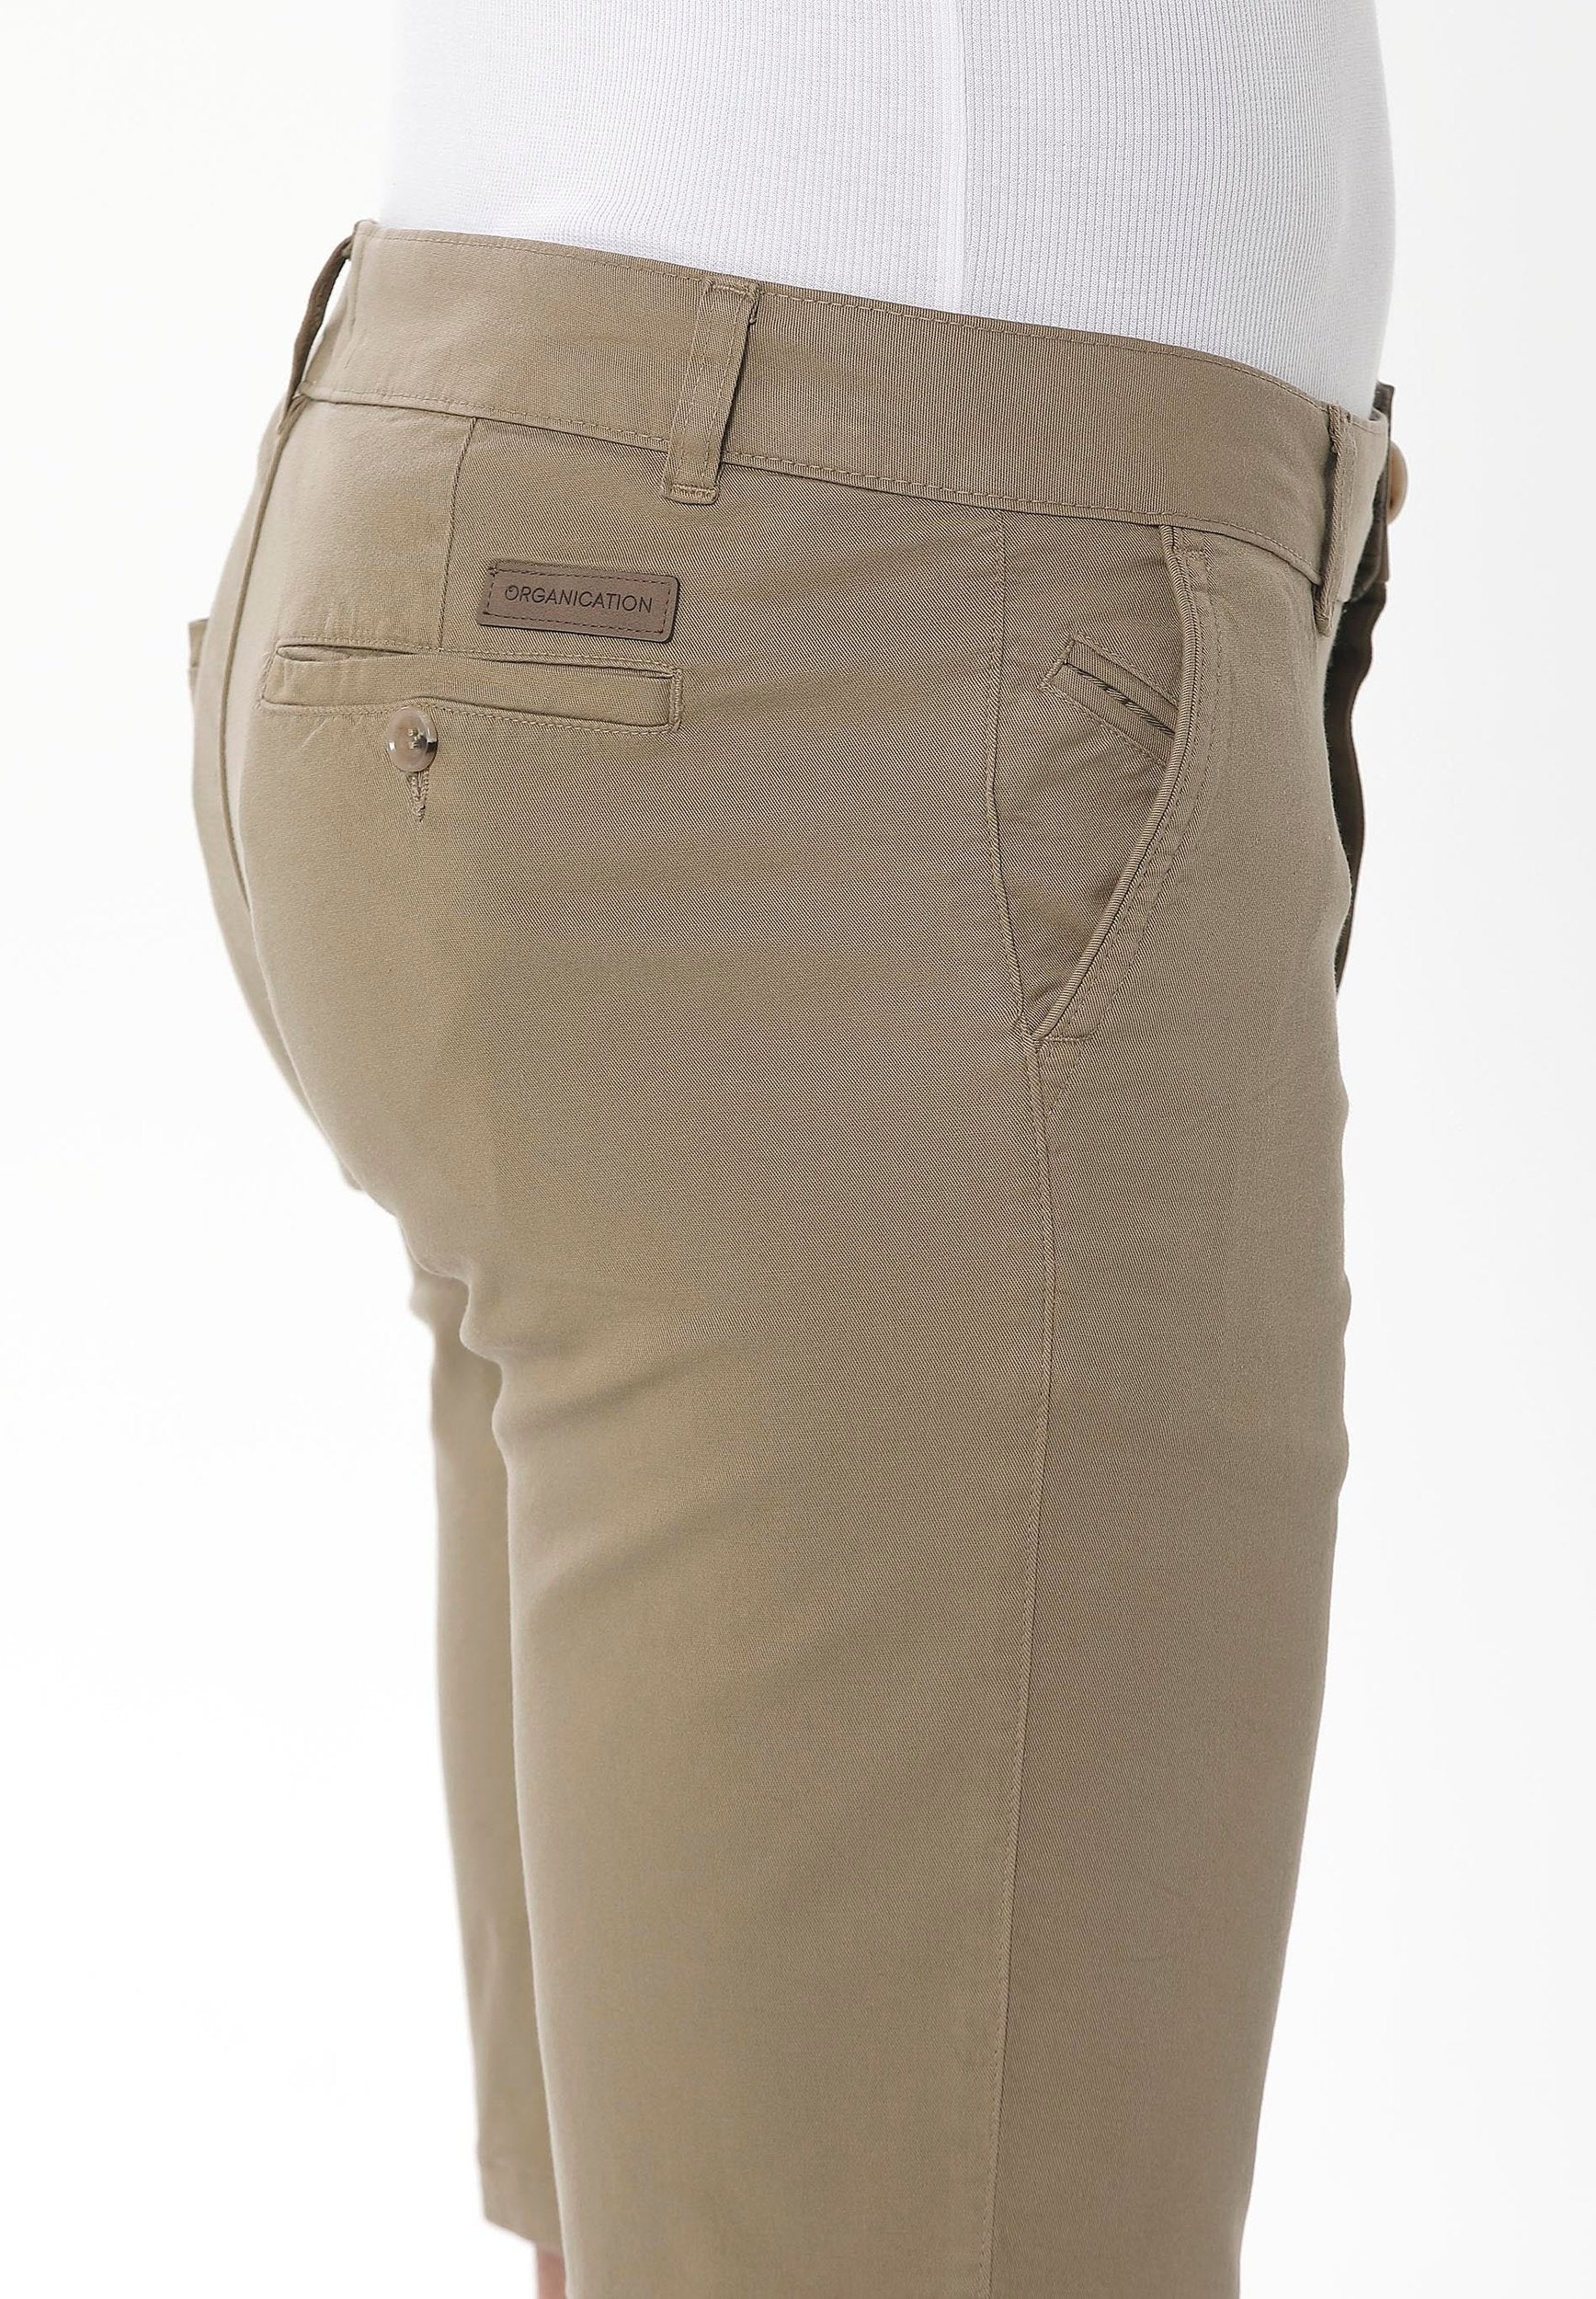 Slim Chino-Shorts aus Bio-Baumwolle